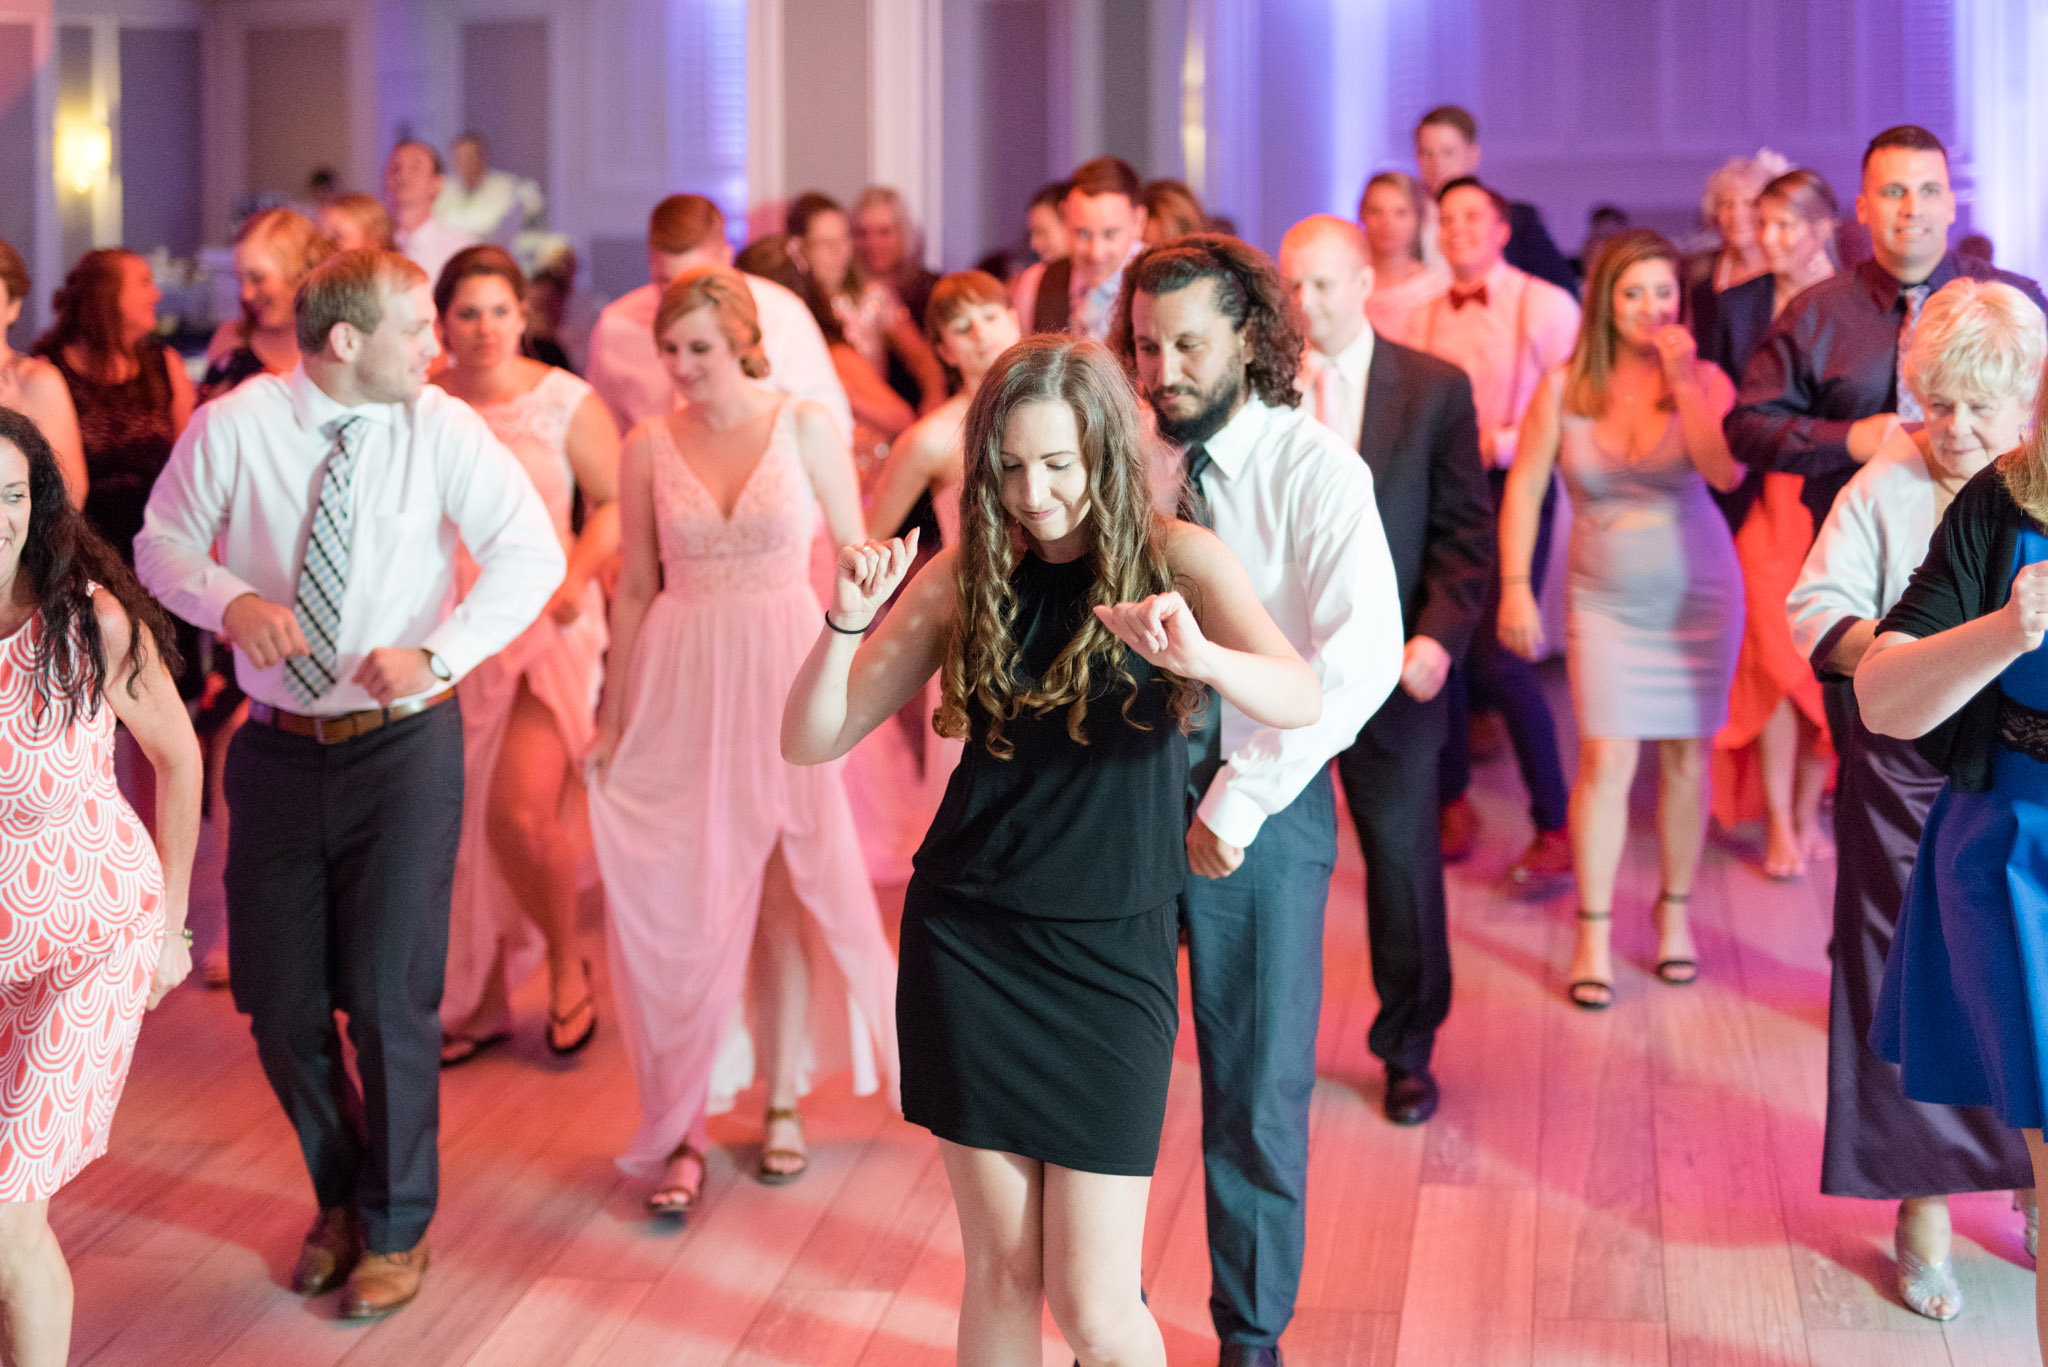 Wedding guests dance.